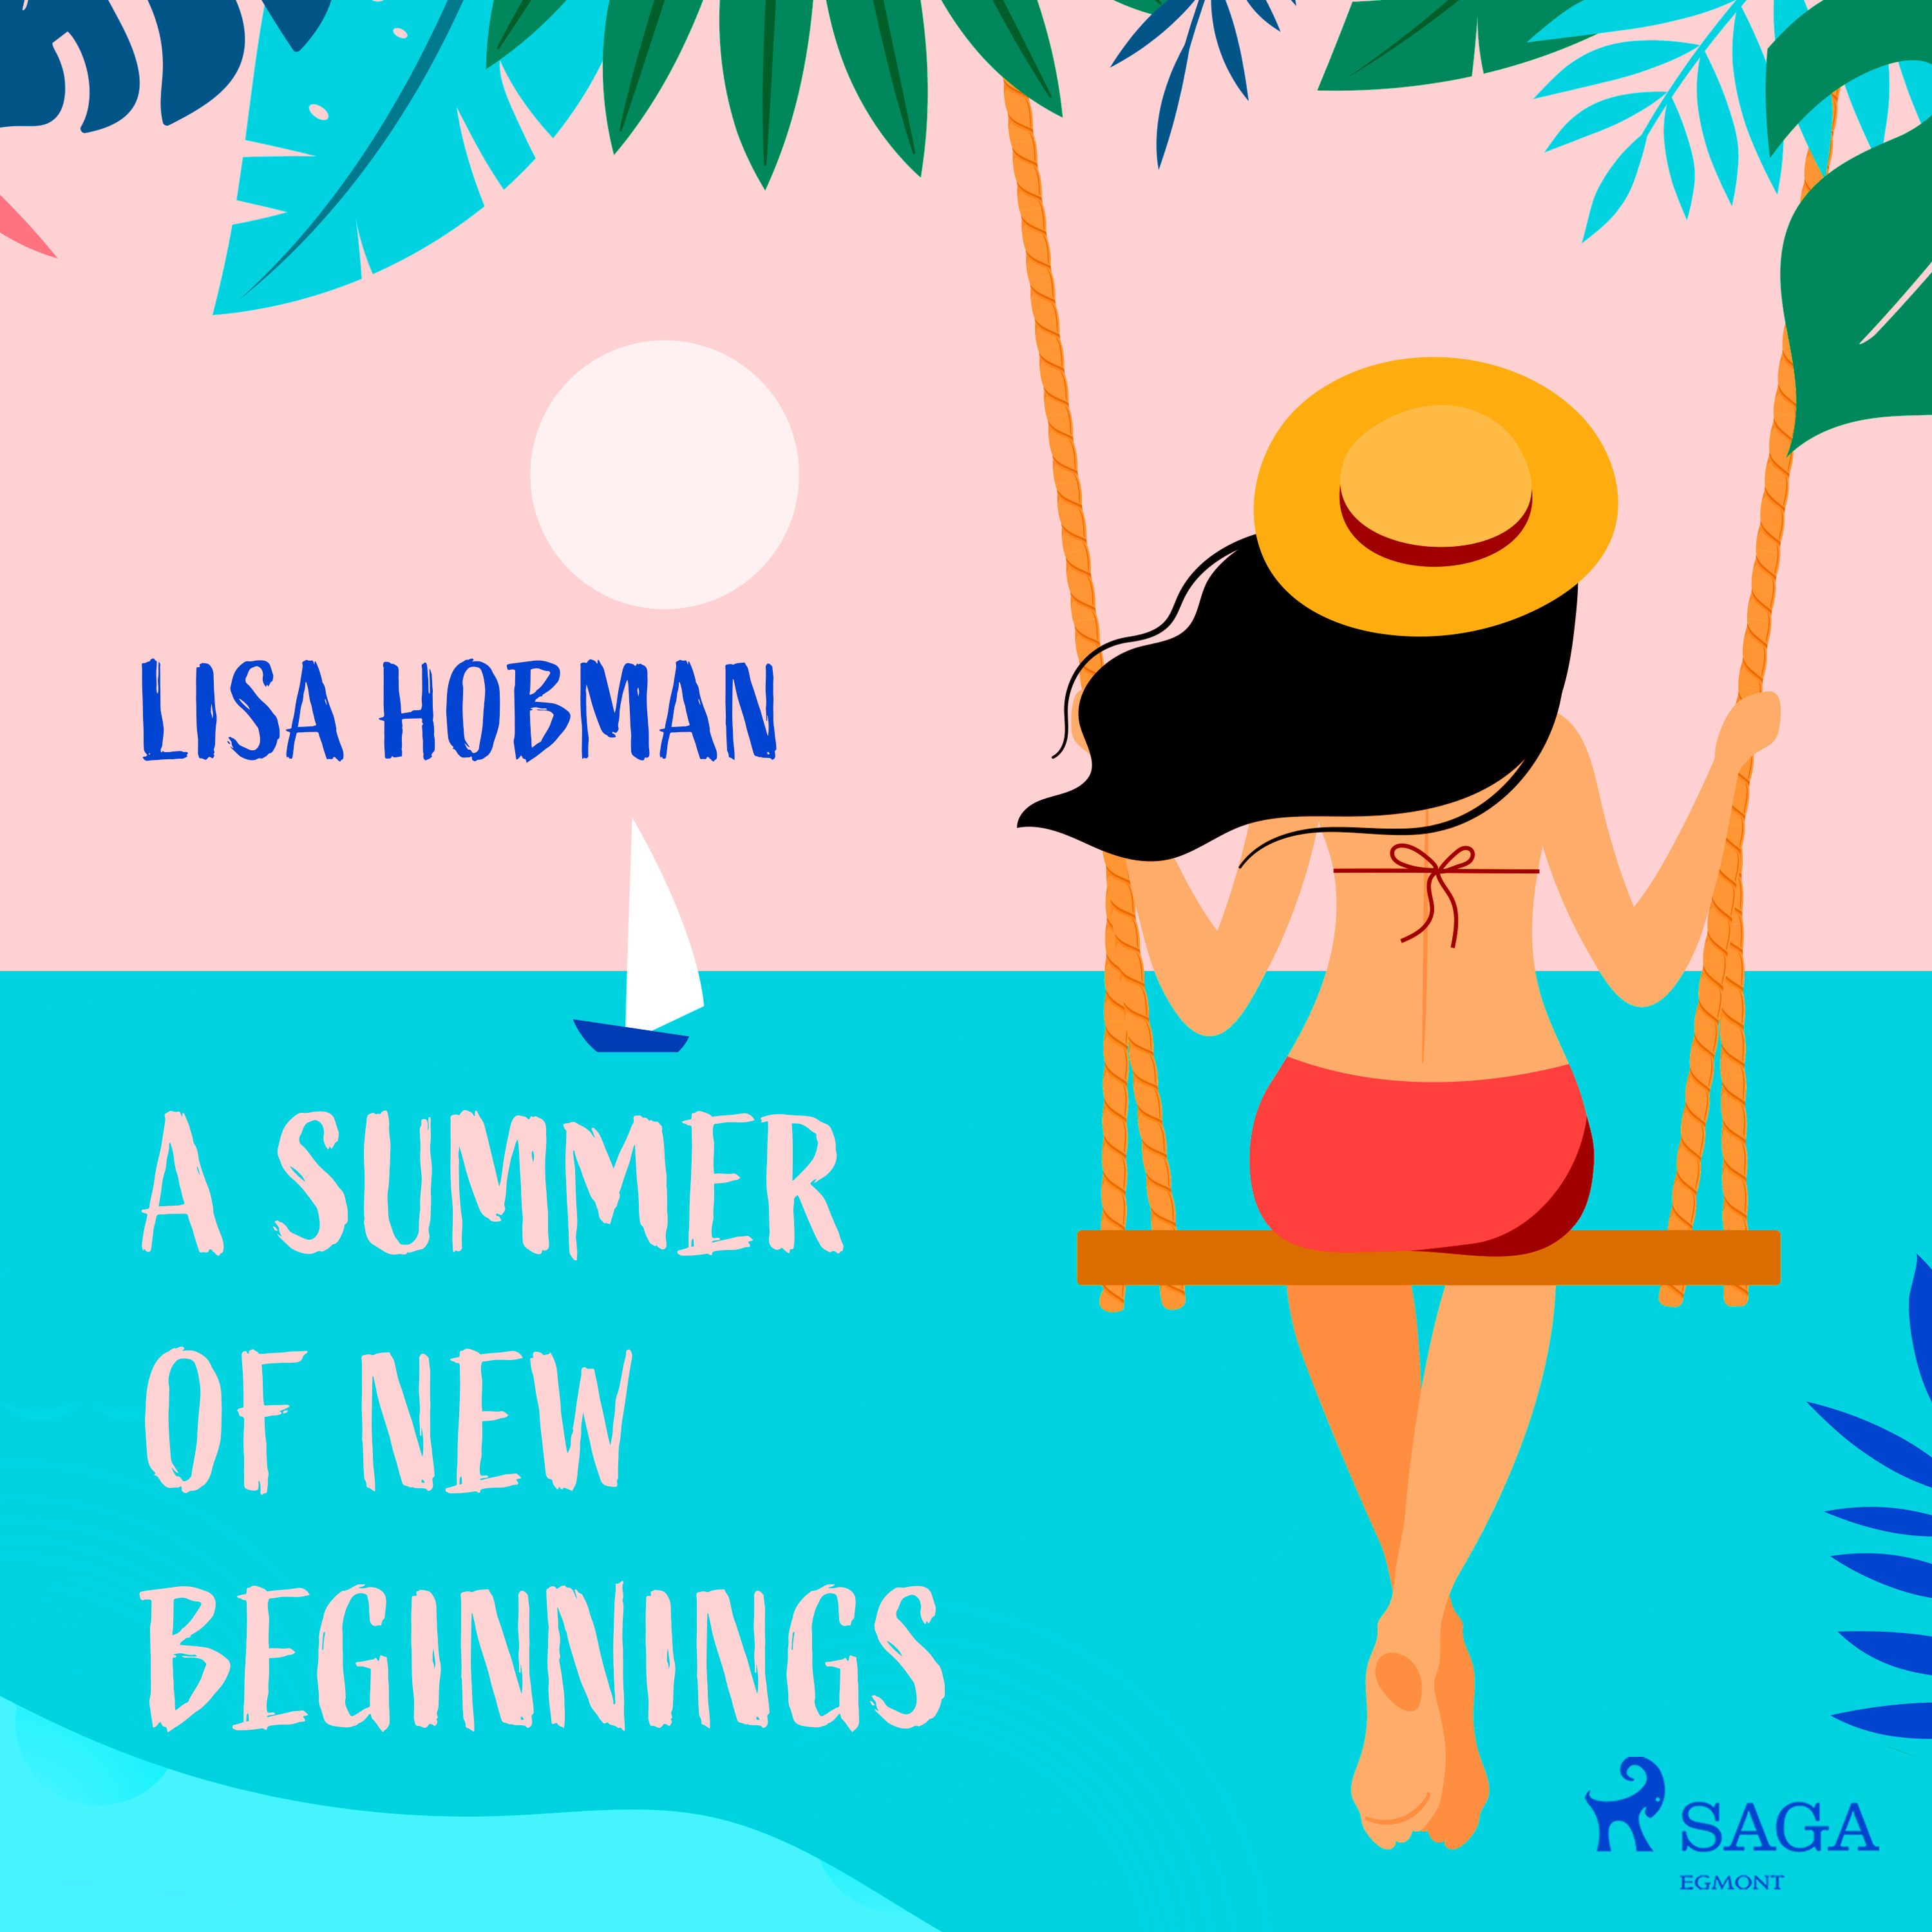 A Summer of New Beginnings, ljudbok av Lisa Hobman